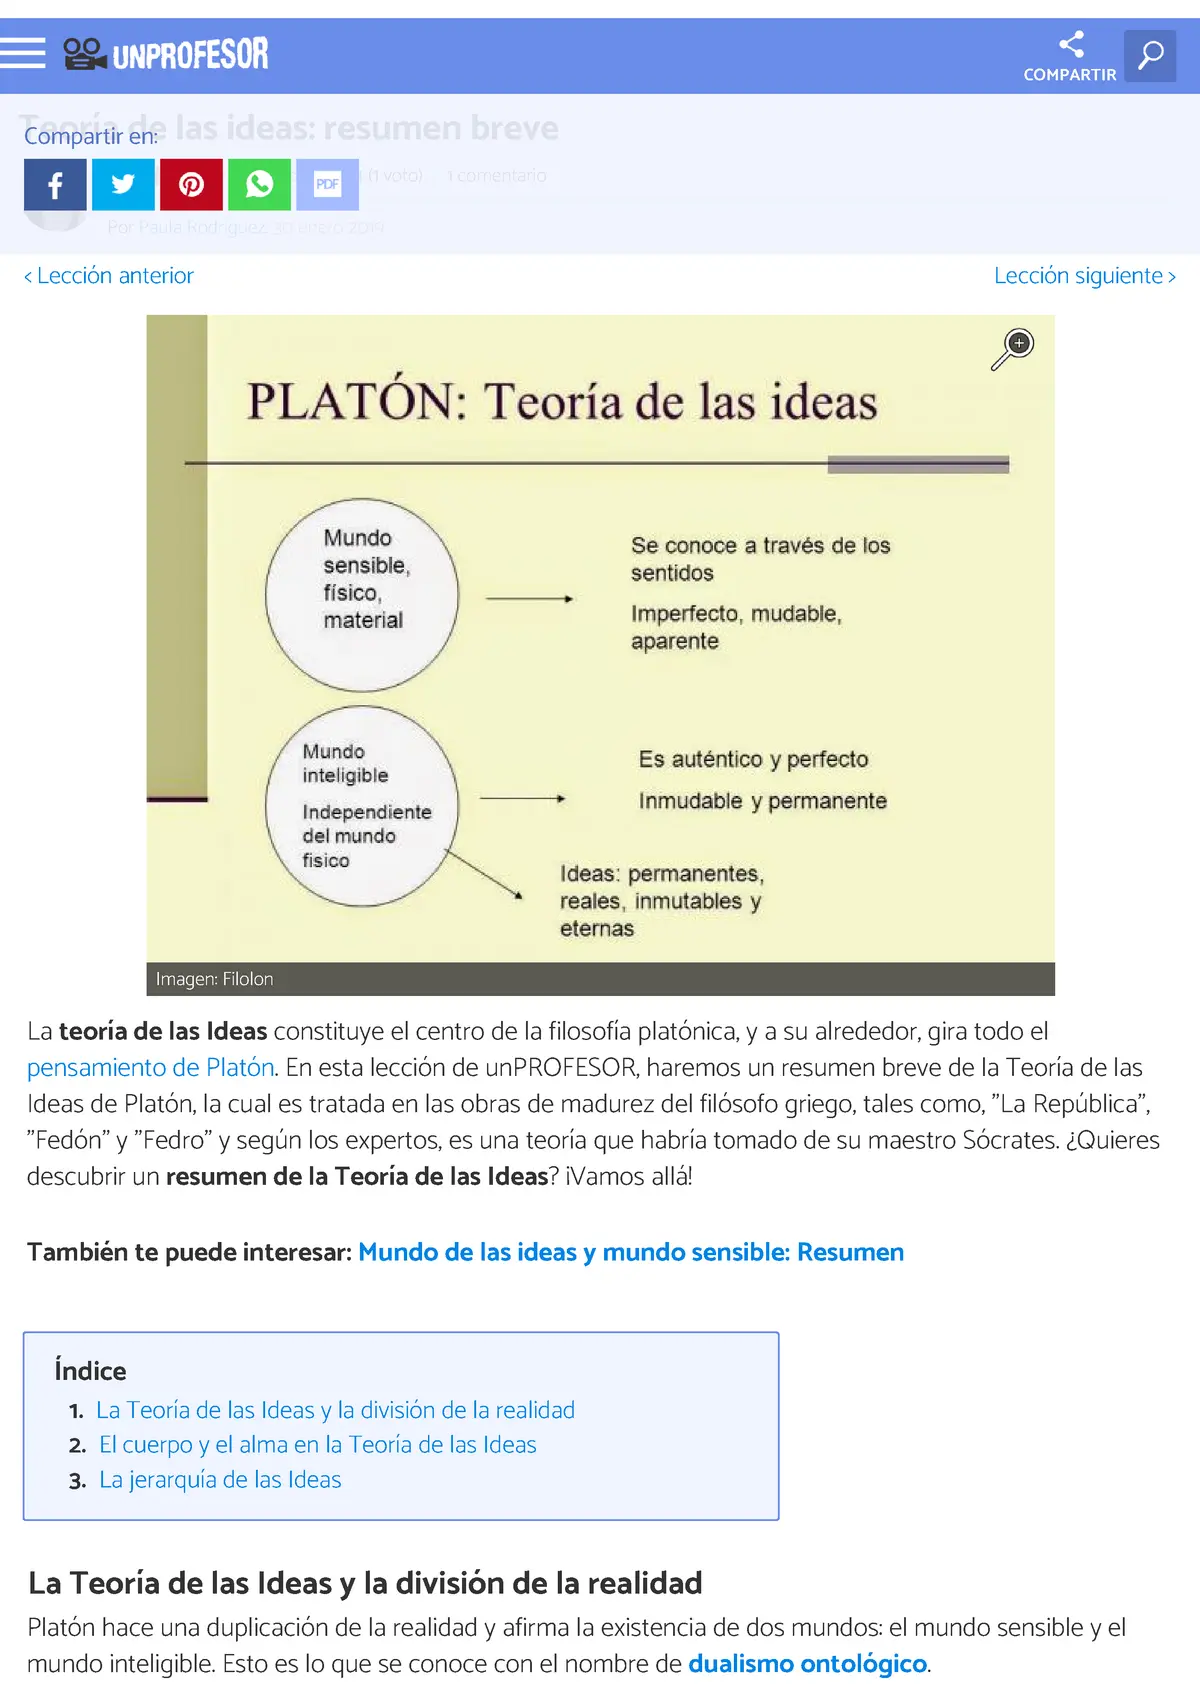 teoria de las ideas de platon resumen - Qué es la teoría de las ideas de Platón